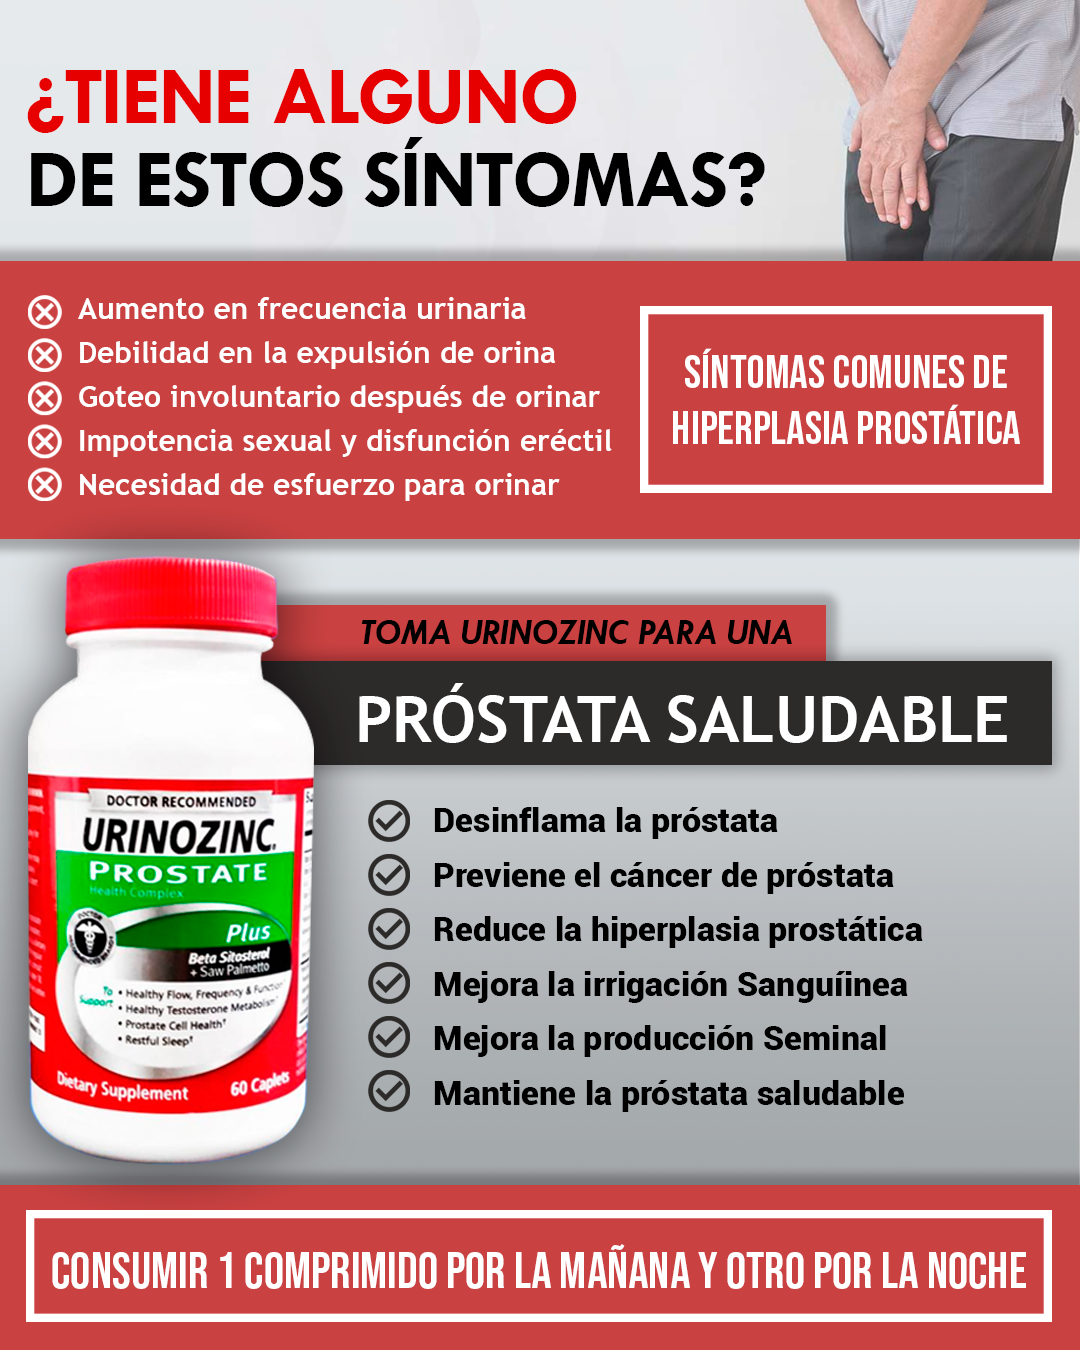 Marka Corp Urinozinc prostate - 1 frasco de 60 capsulas  